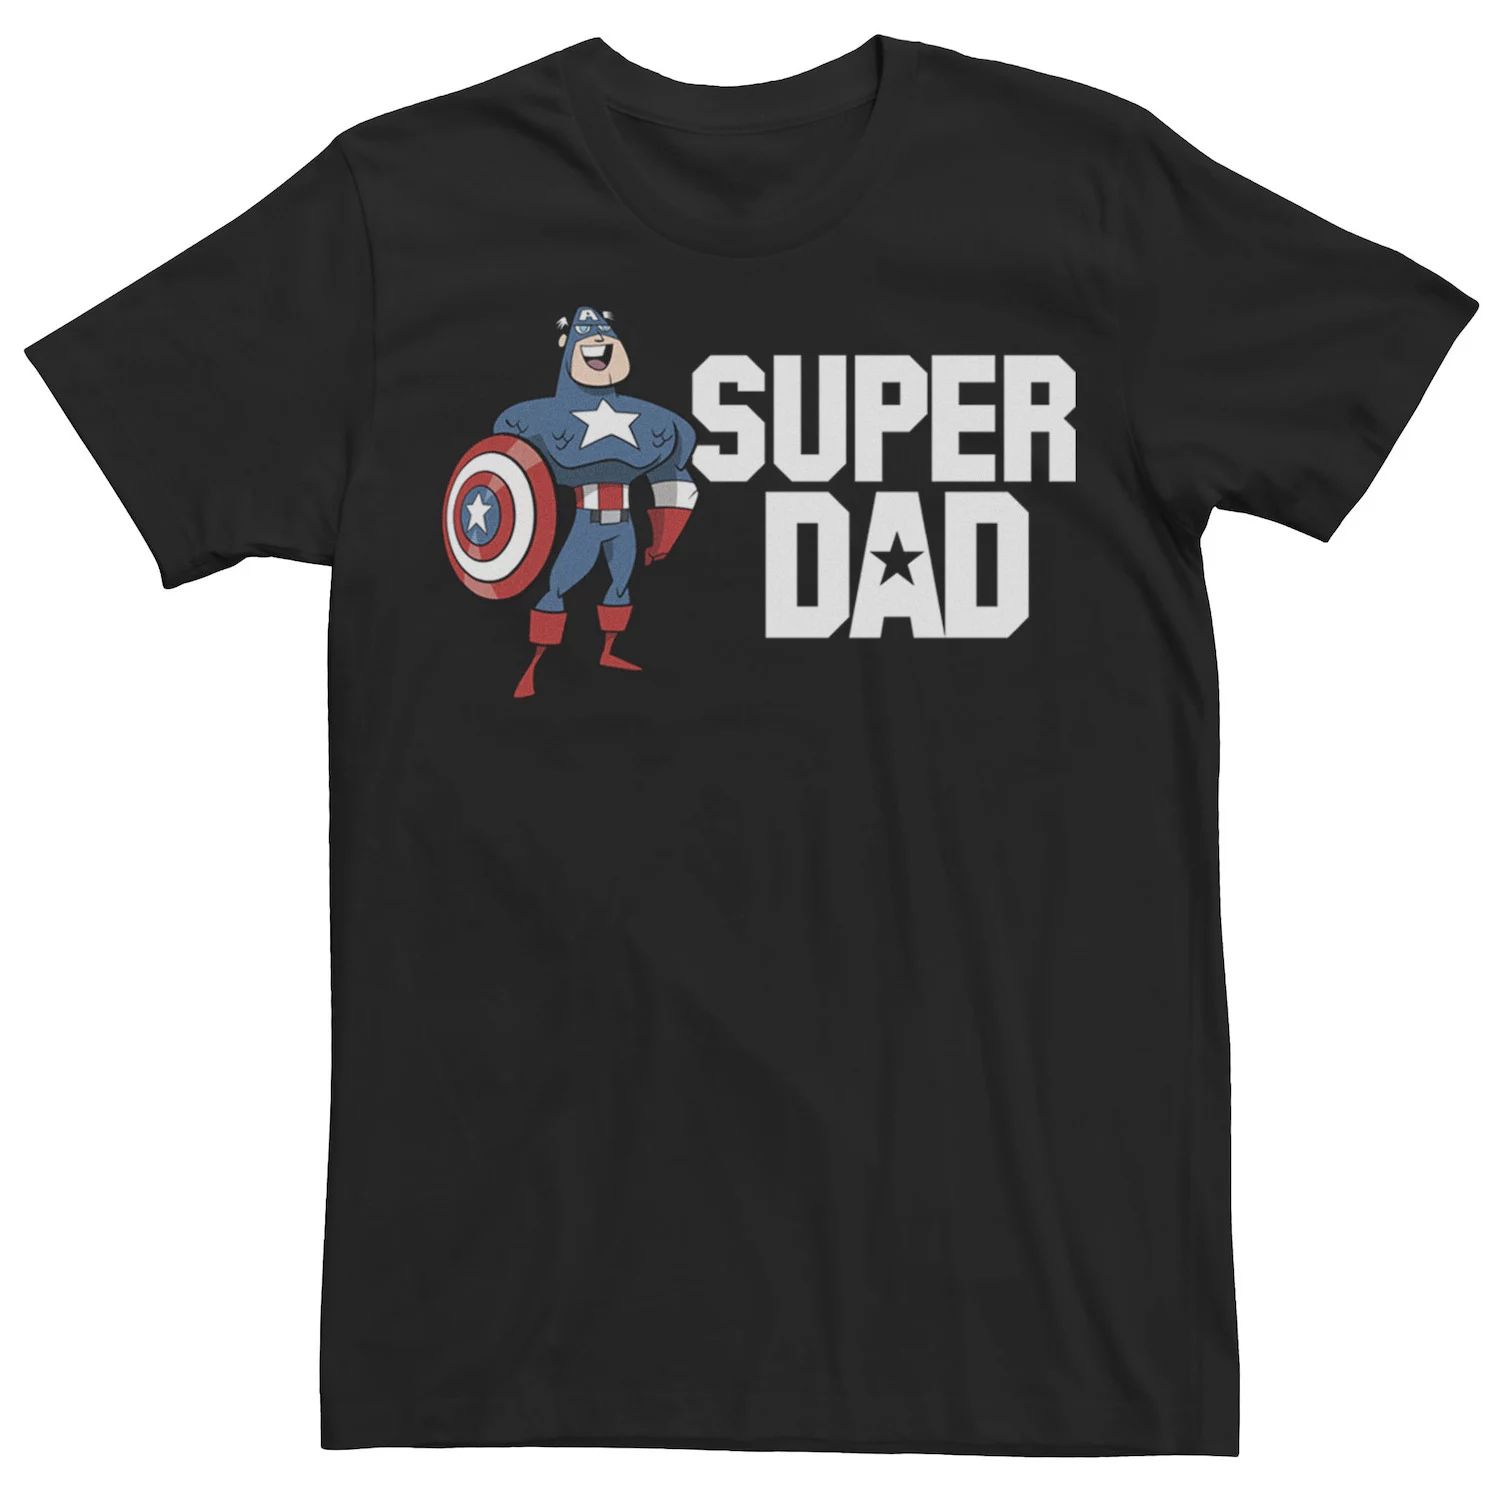 Мужская футболка с портретом Капитана Америки и Суперпапы на День отца Marvel